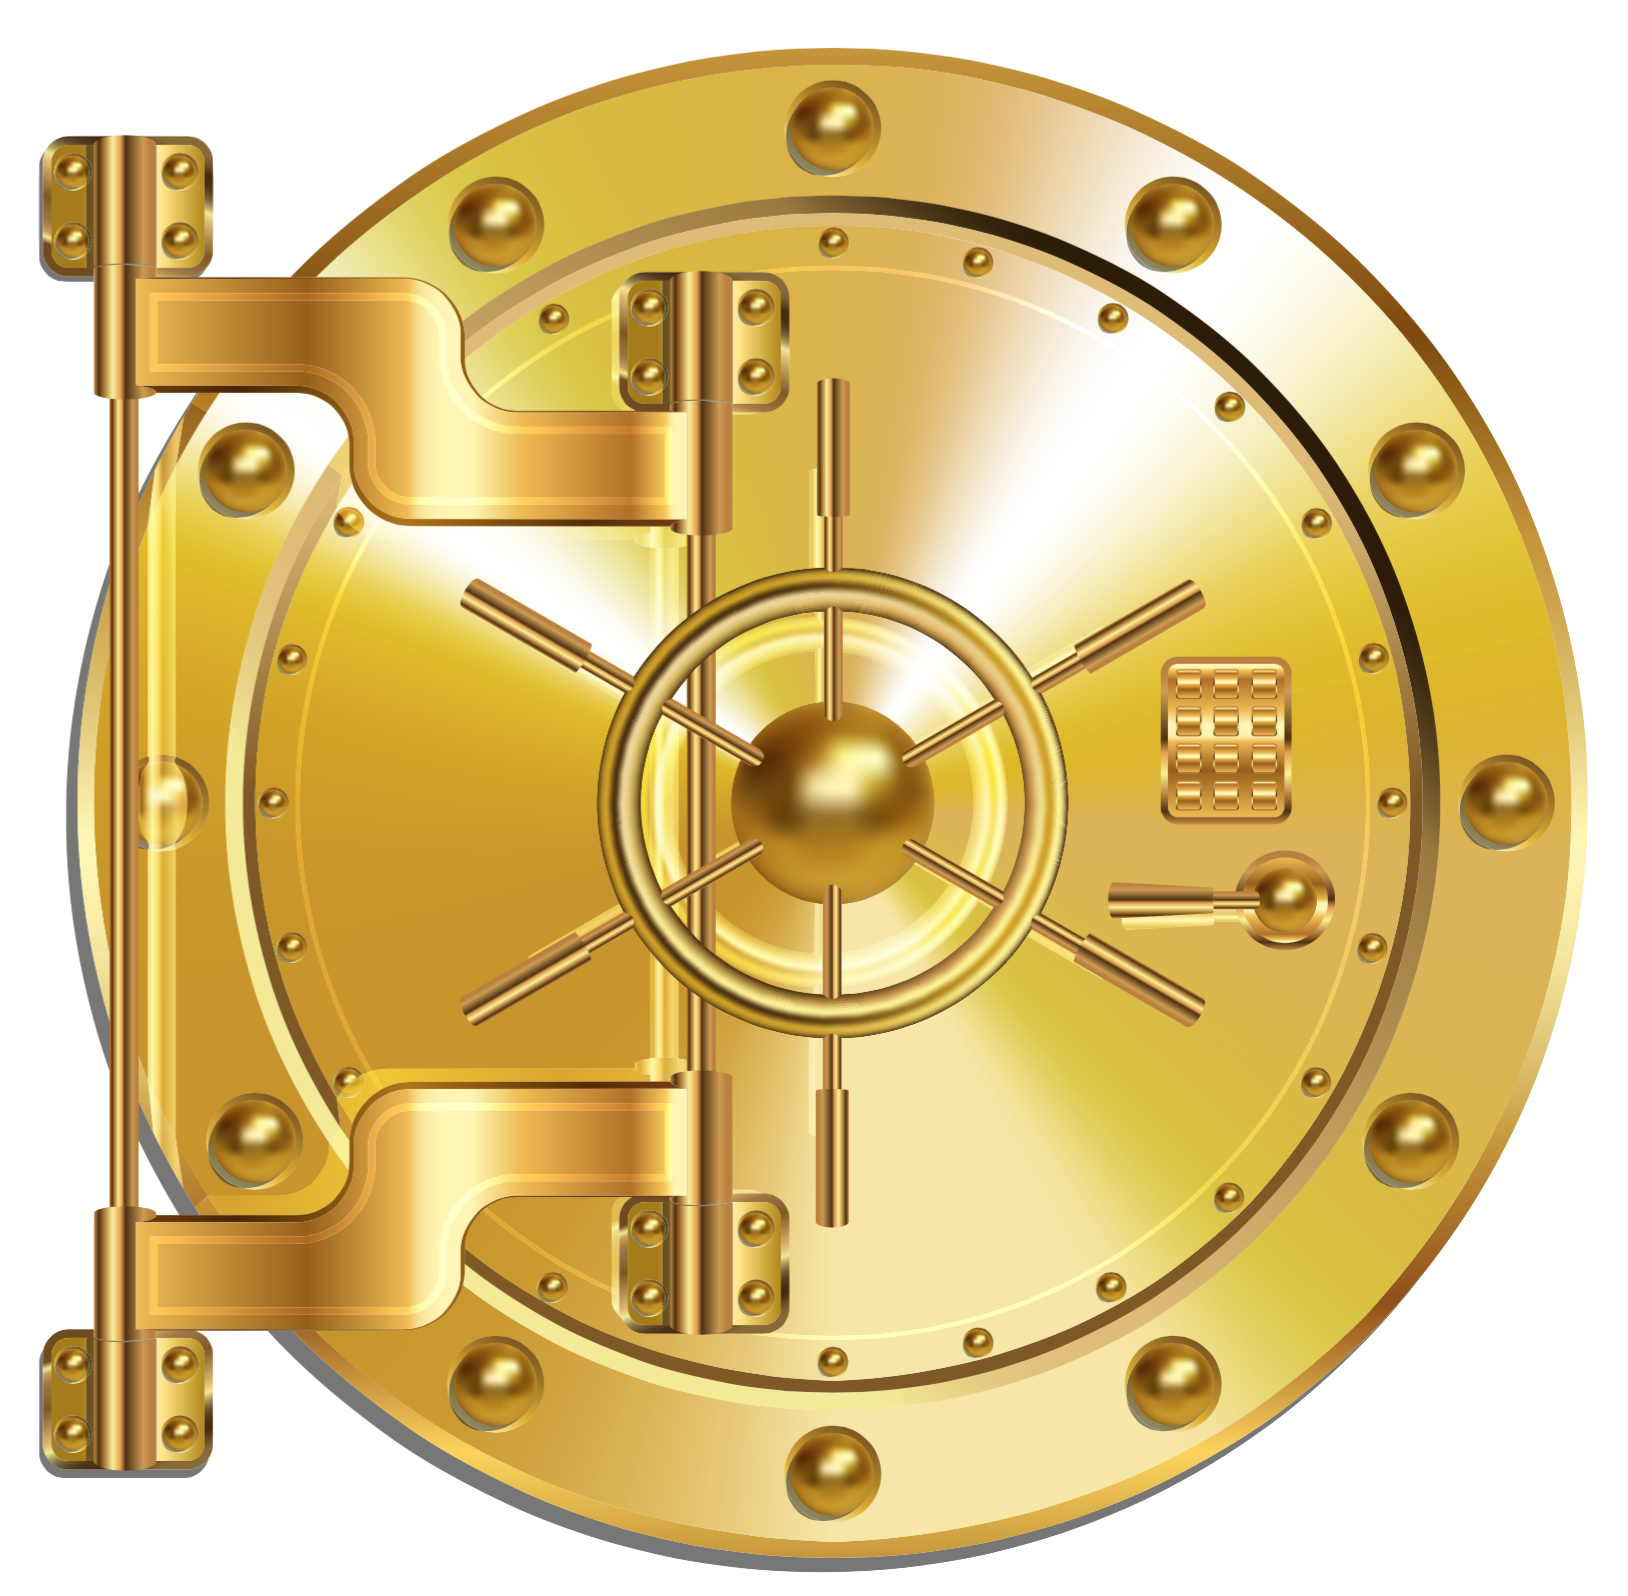 graphic image of bank vault door